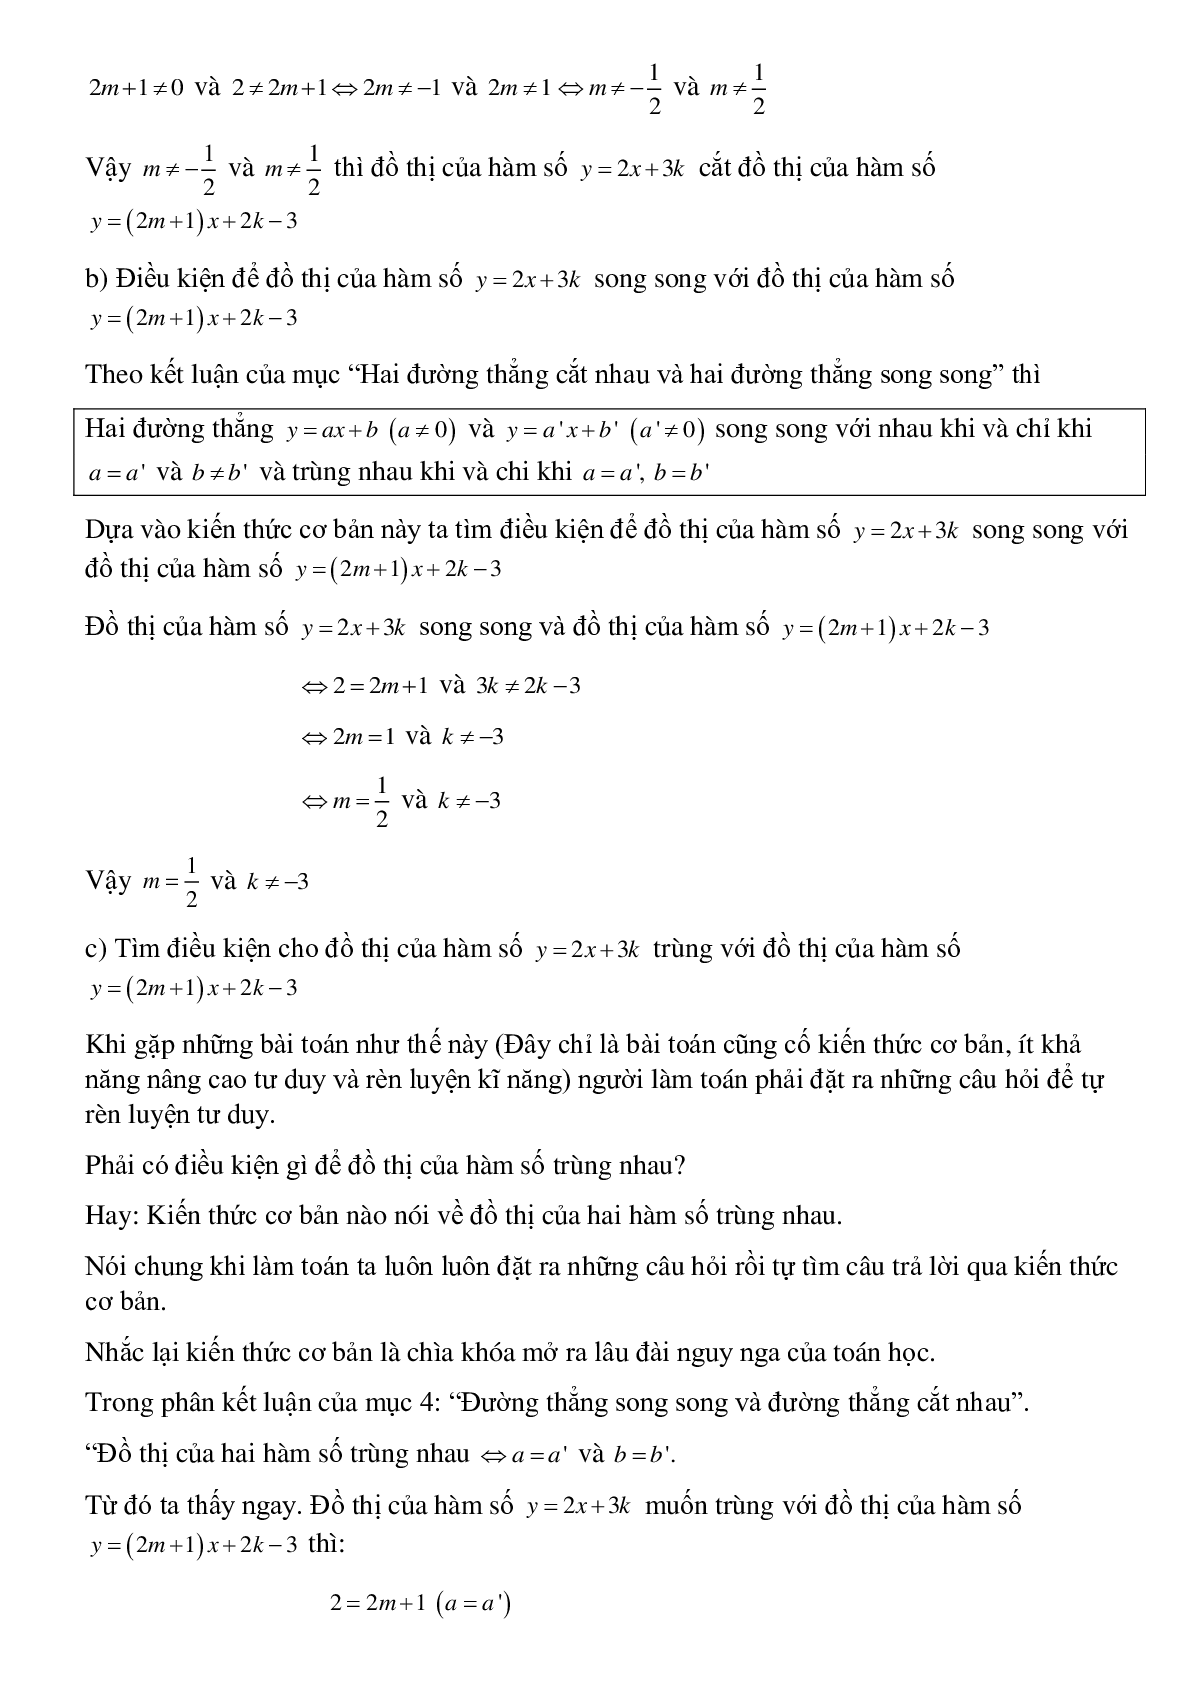 50 Bài tập Đường thẳng song song và đường thẳng cắt nhau (có đáp án)- Toán 9 (trang 4)